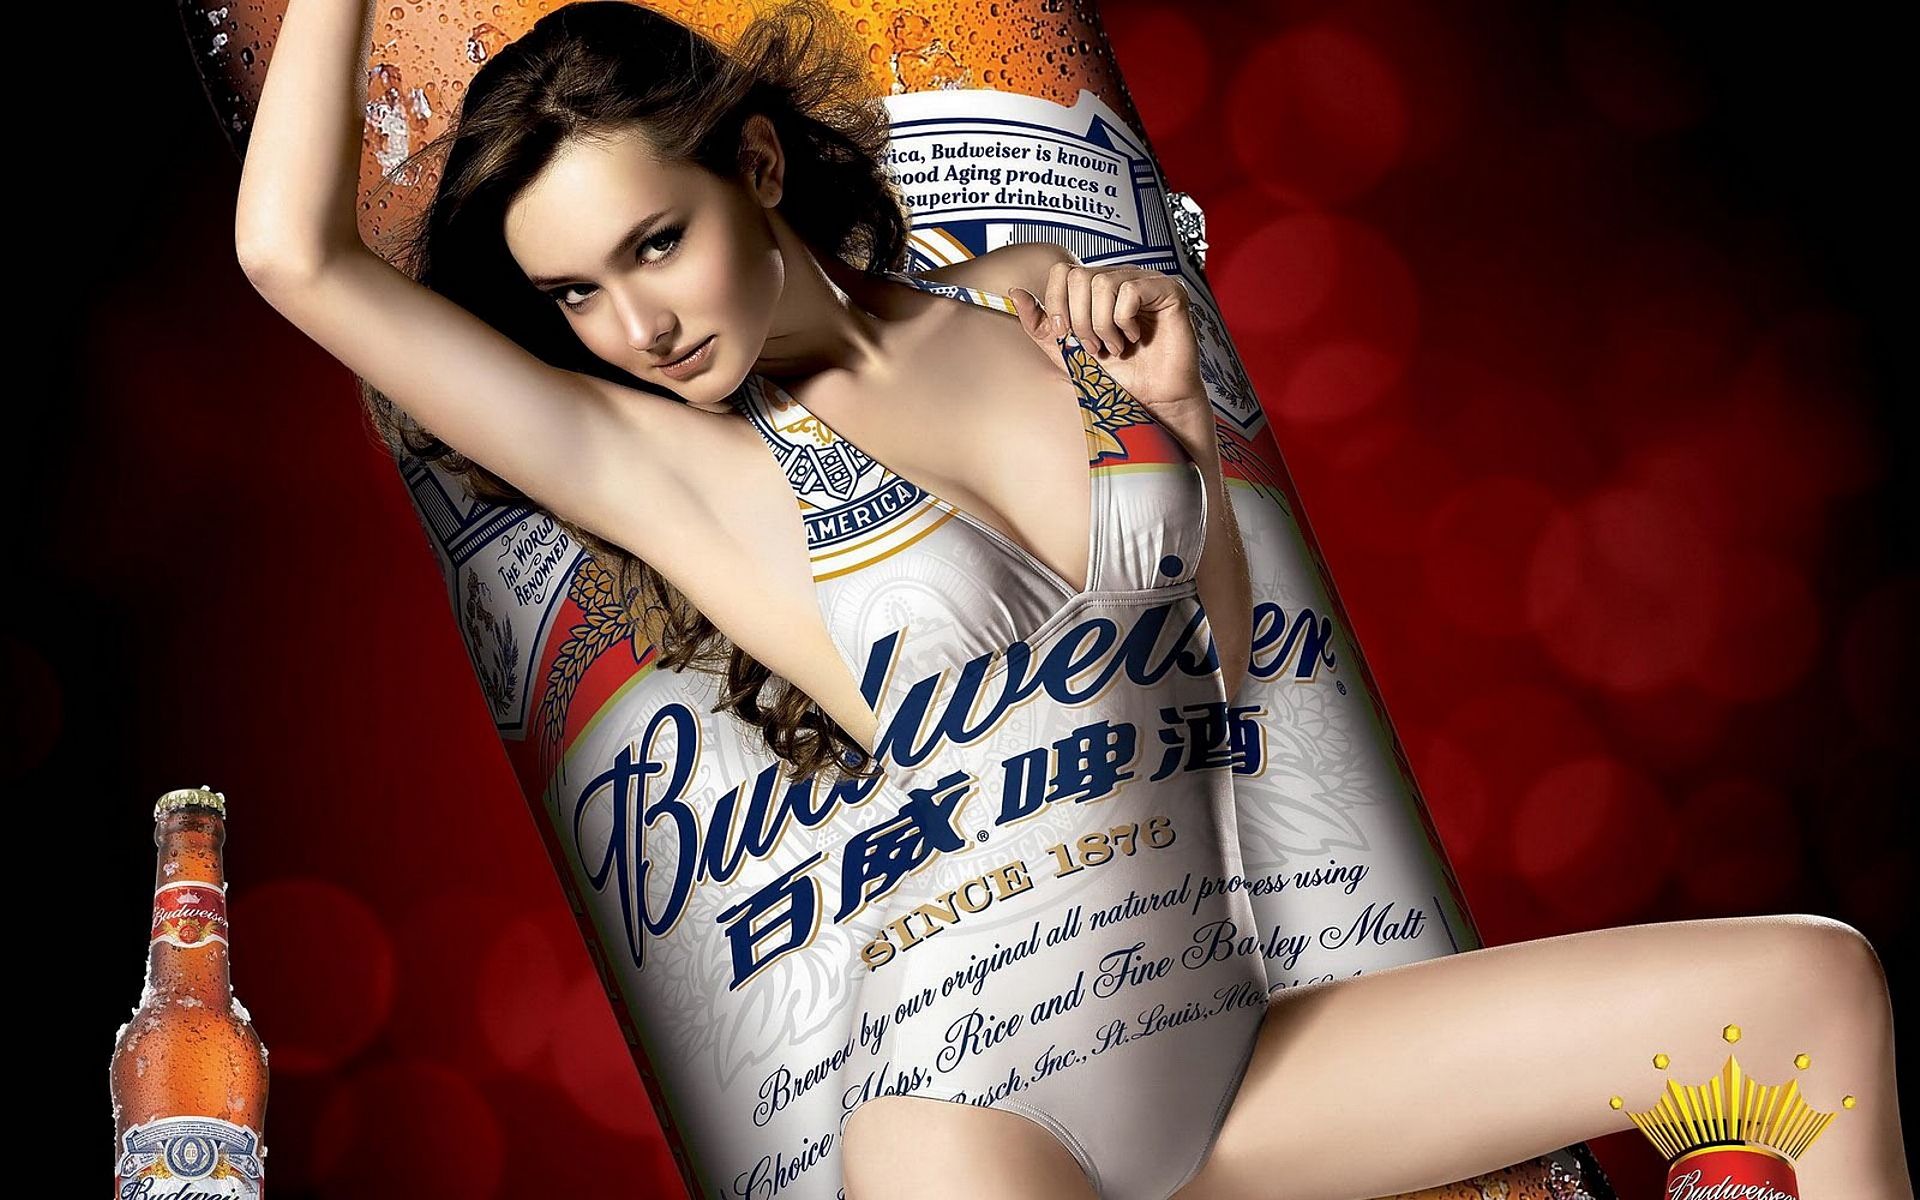 эротическая реклама пива, Будвайзер, эротика в рекламе фото